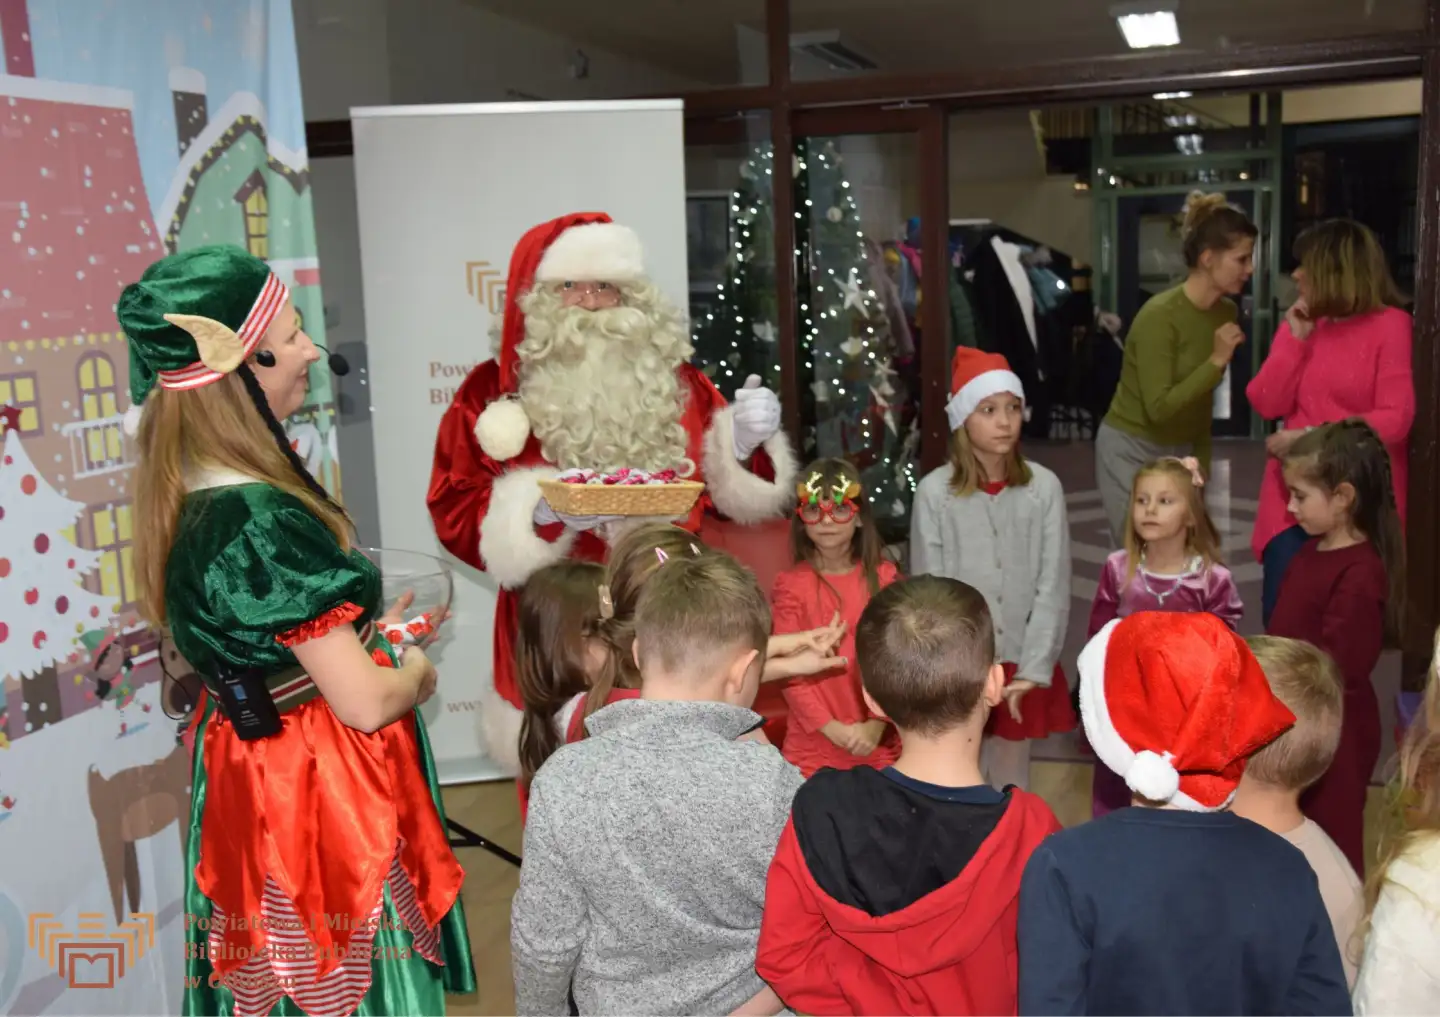 Zdjęcie zostało zrobione w Czytelni olkuskiej Biblioteki. Na tle płótna z zimowy, świątecznym miastem stoi Mikołaj, kobieta w stroju elfa i ustawione w kółko dzieci. Mikołaj i elf trzymają rękach miski ze słodkościami dla dzieci.